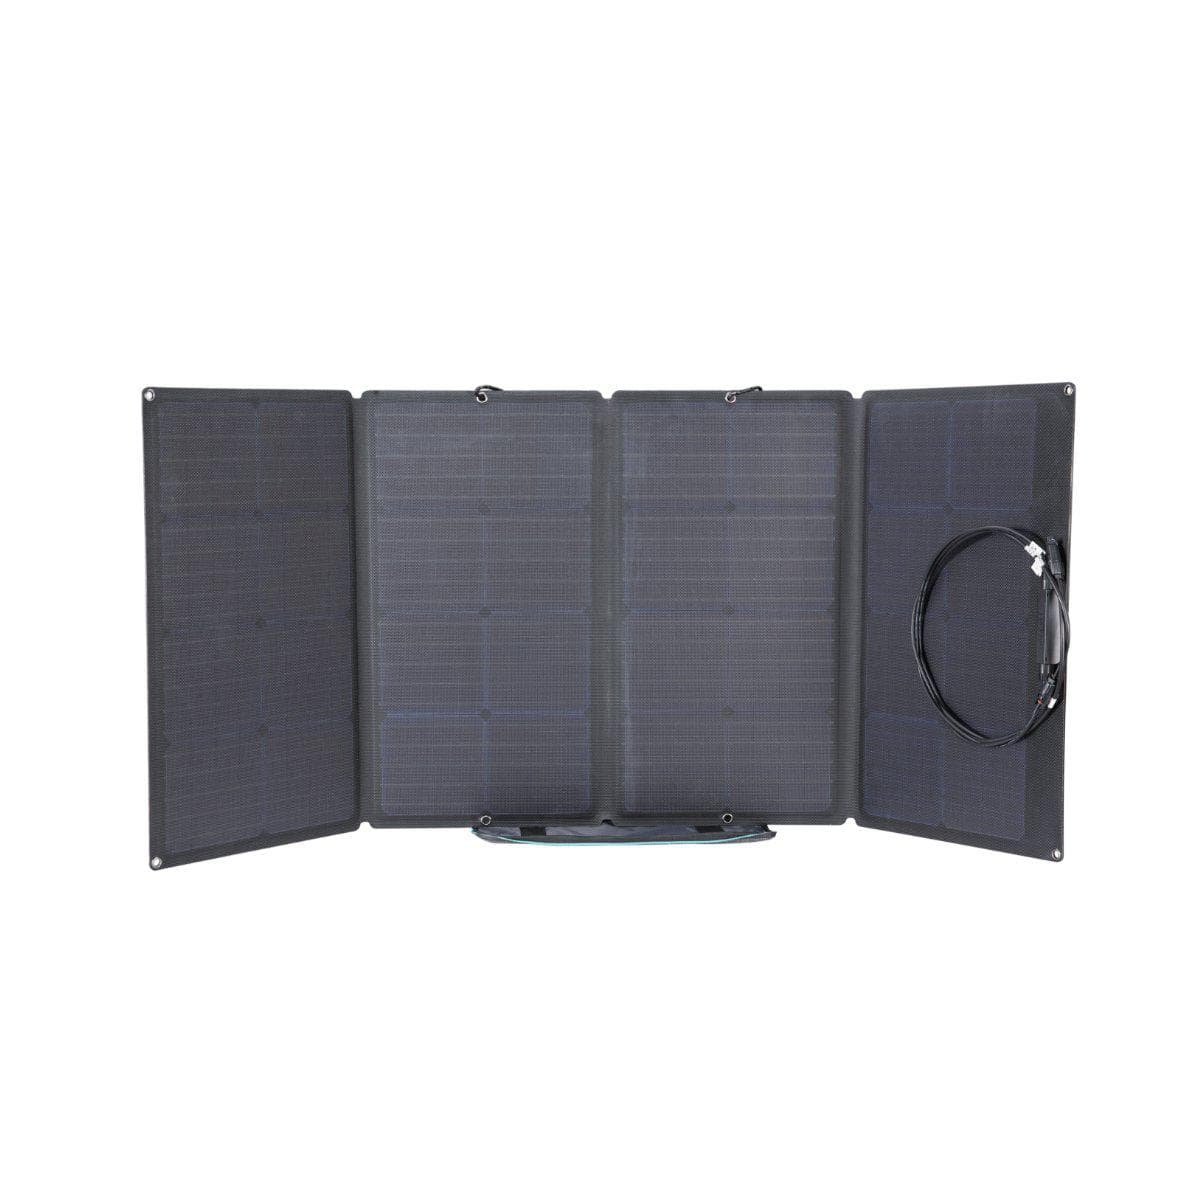 EcoFlow 160W Portable Solar Panel Bundle